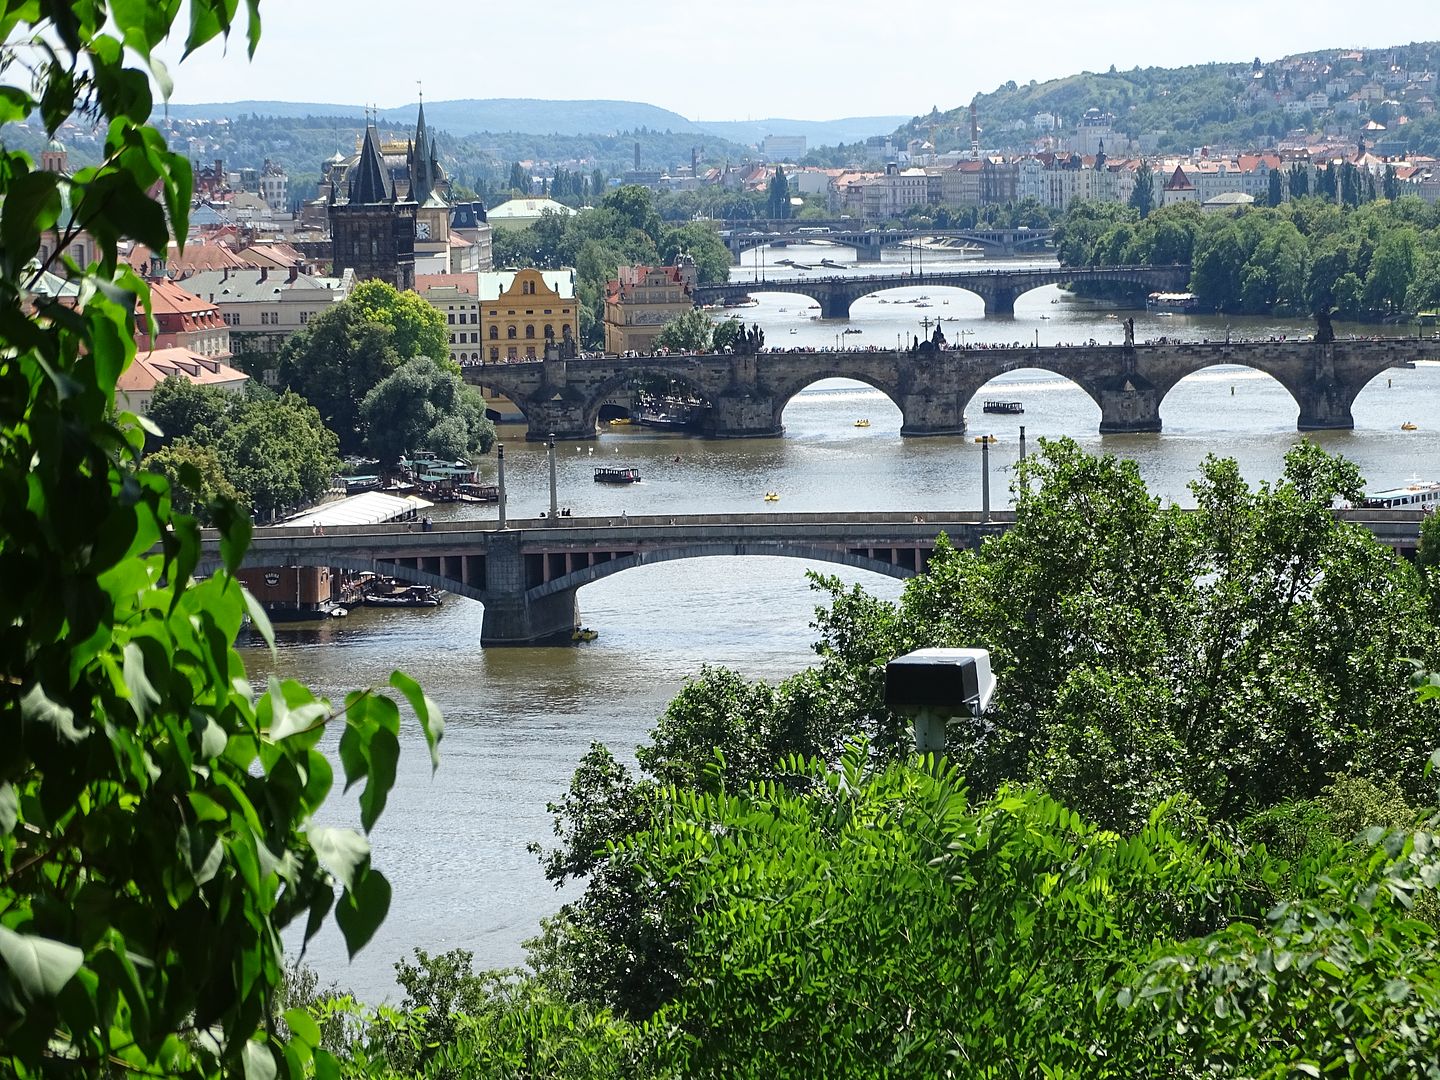 7 días en Praga con escursiones a Dresde (Alemania),Karlovy Vary y Terezin (E.C) - Blogs of Czech Republic - Día 3: Viernes 1 de Julio de 2016 (26)